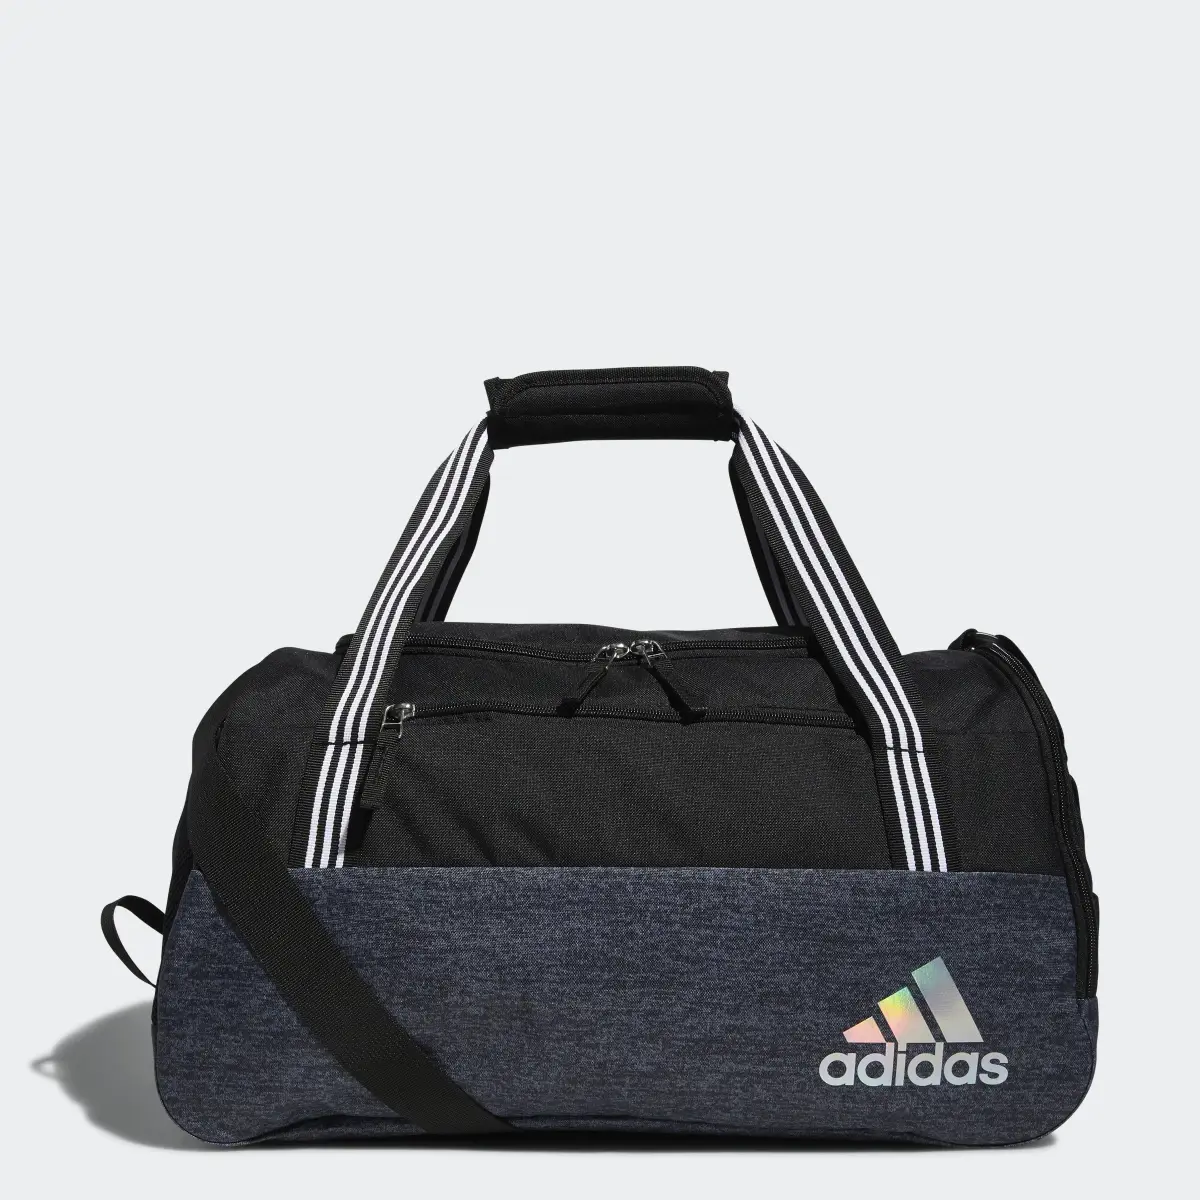 Adidas Squad Duffel Bag. 1